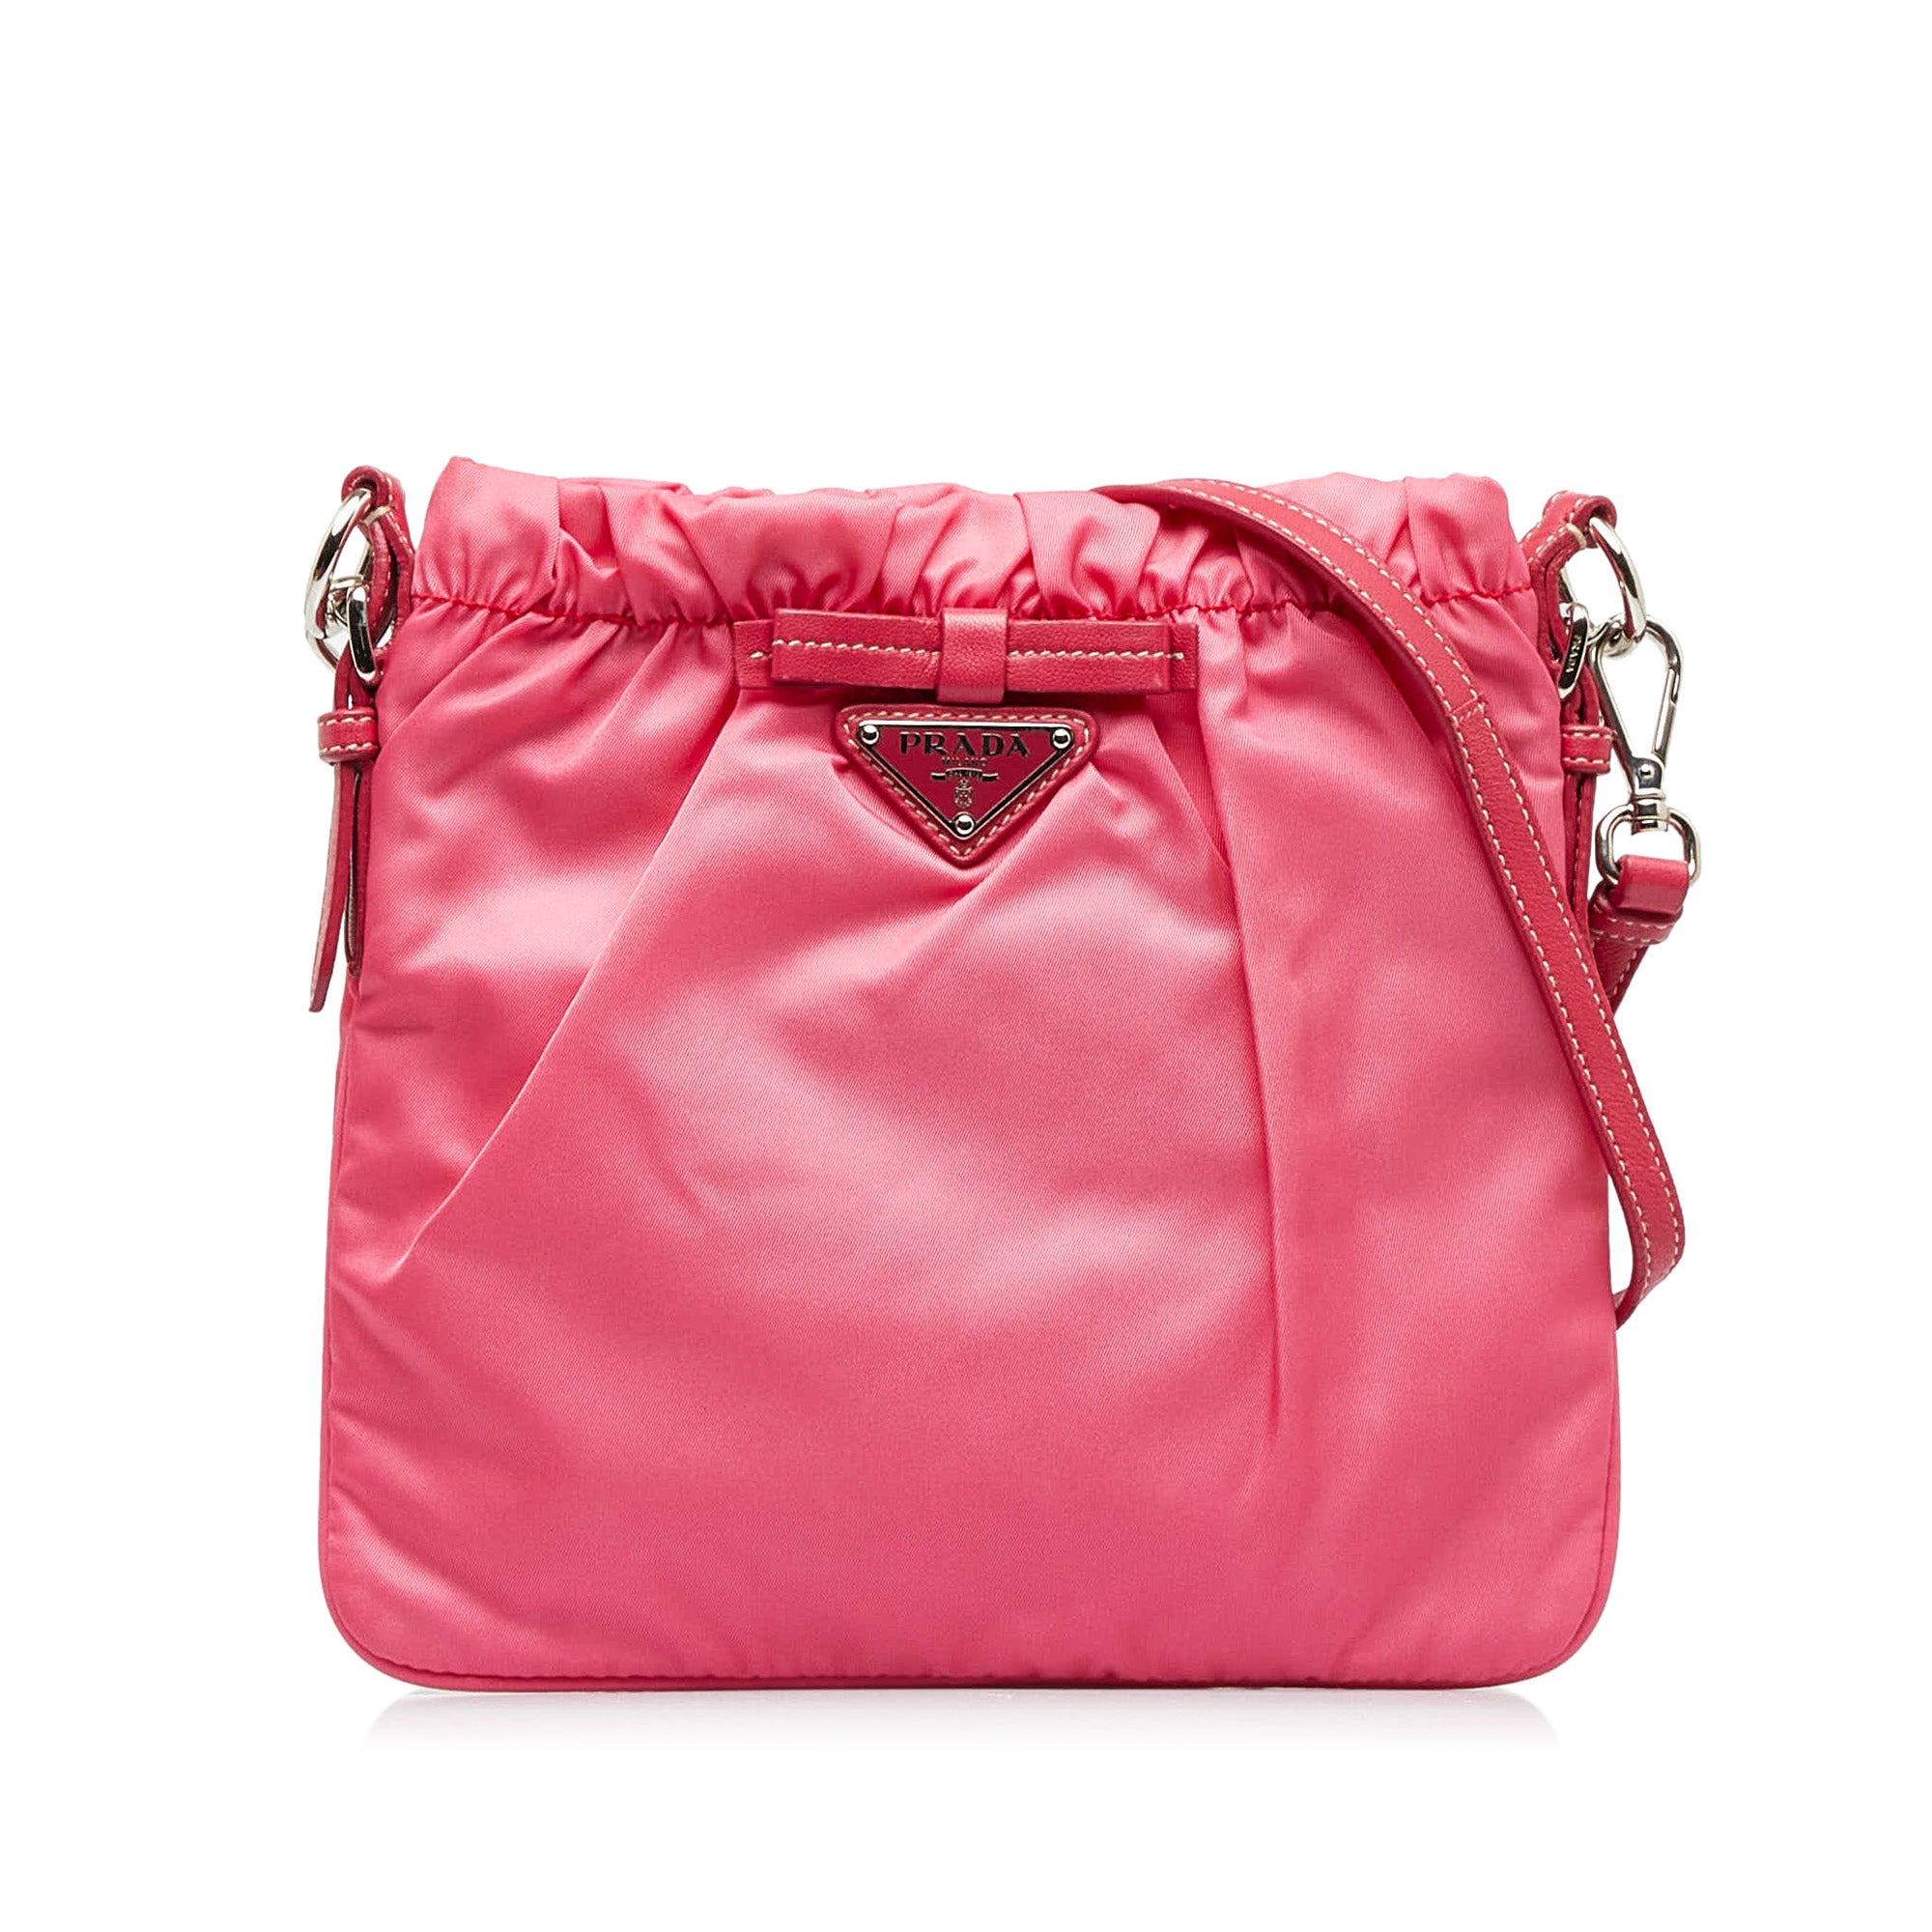 Prada Women's Shoulder Bags - Pink